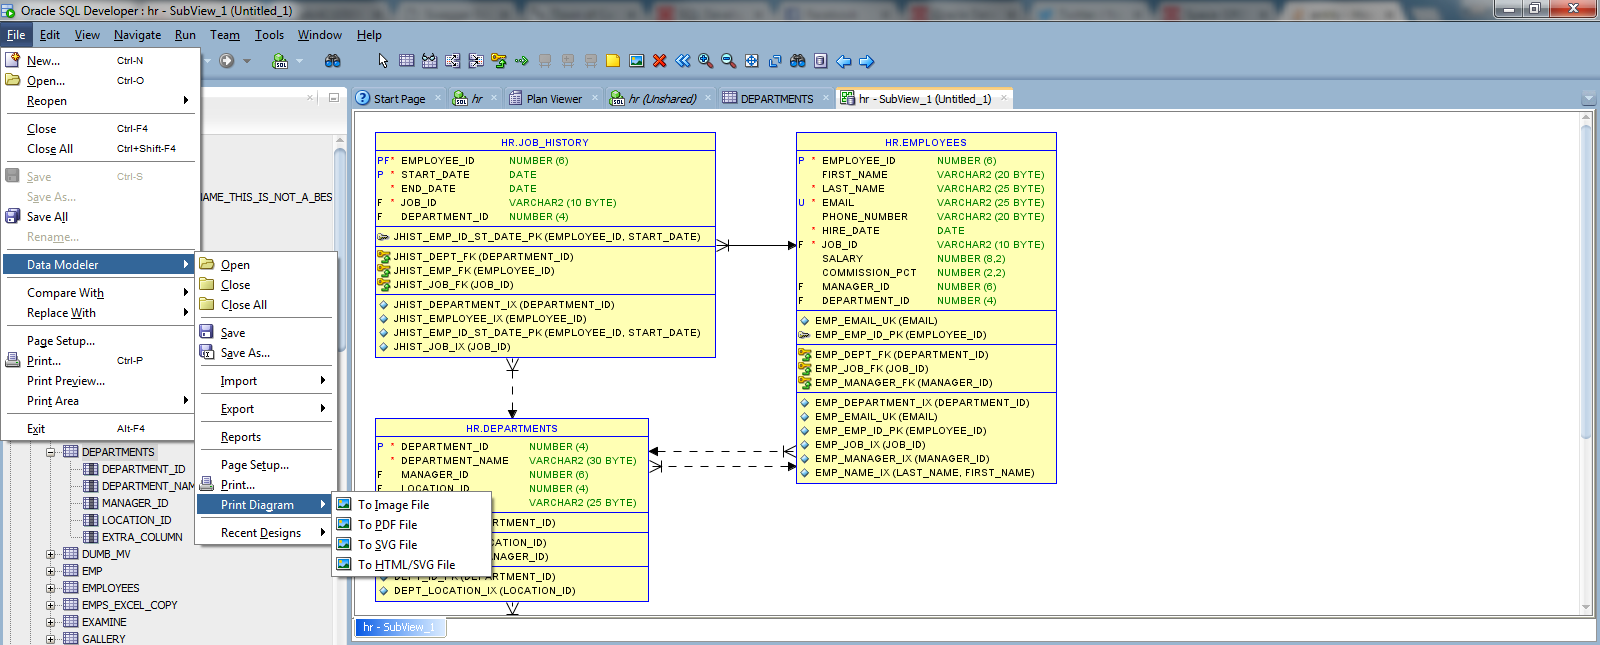 How To Export Erd Diagram To Image In Oracle Data Modeler